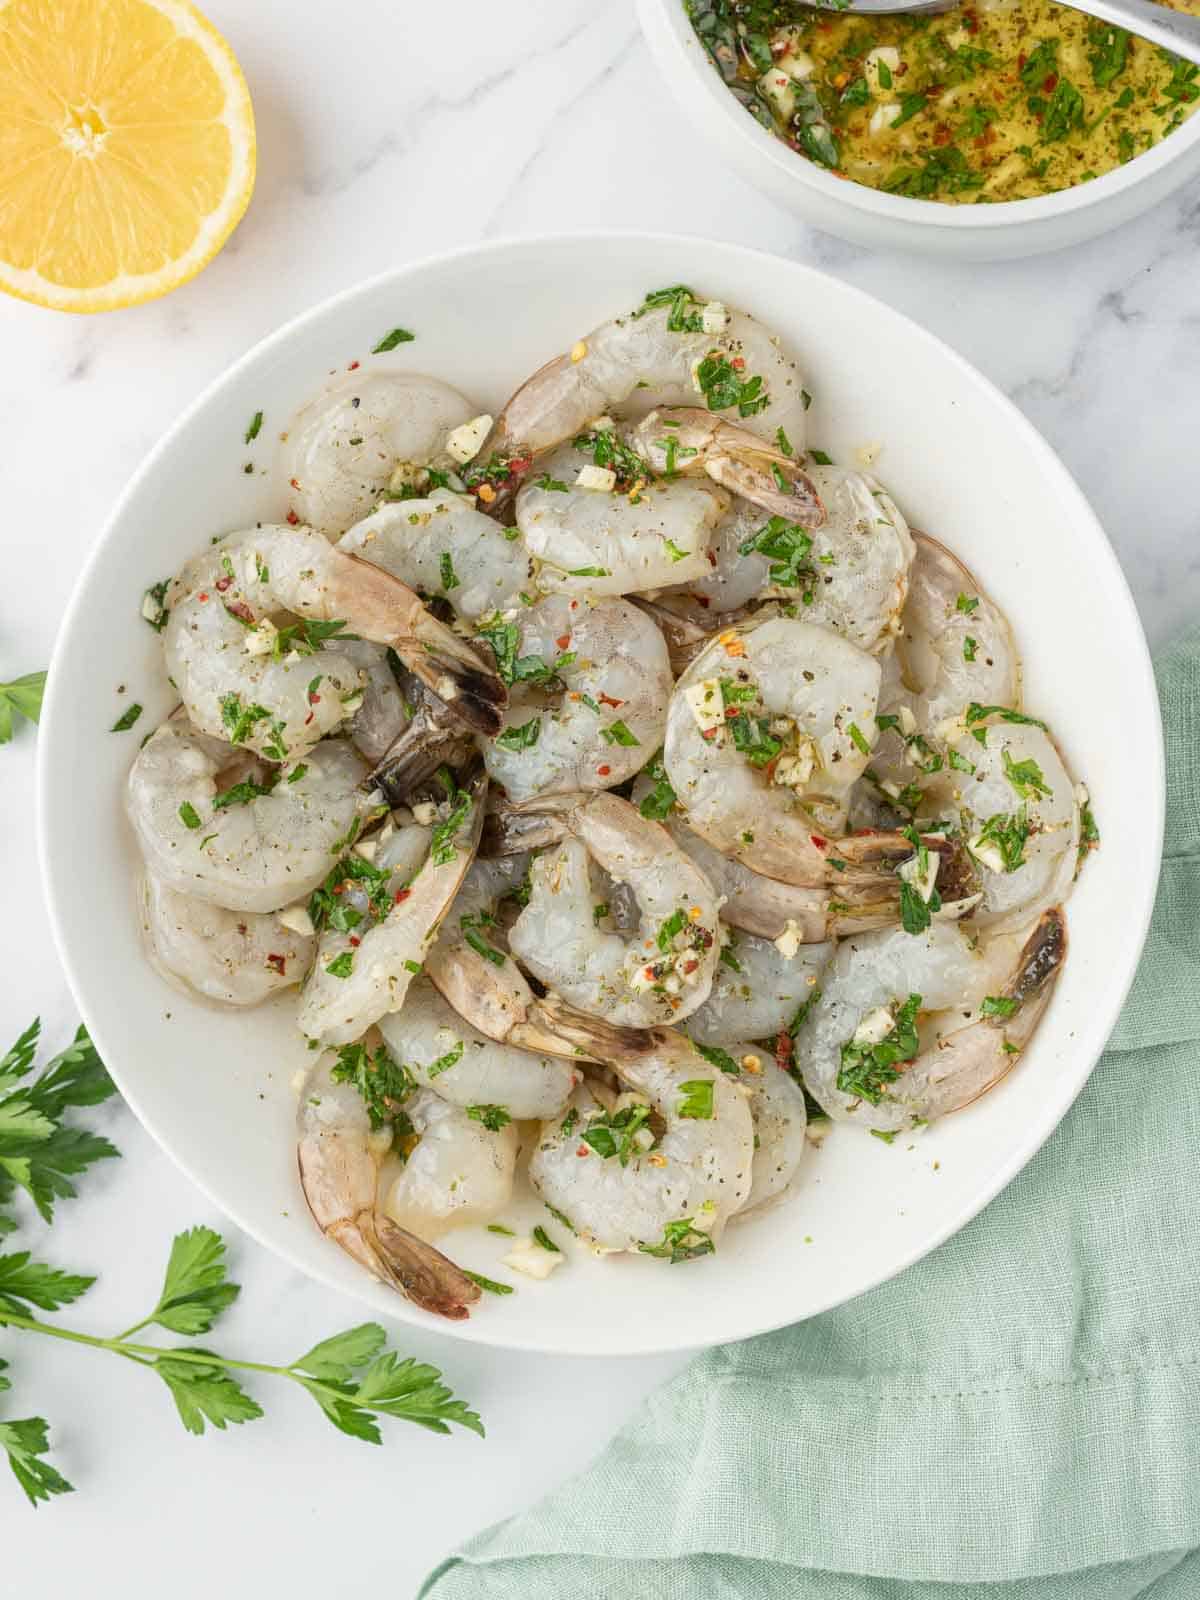 How to marinate shrimp for grilled garlic shrimp skewers.